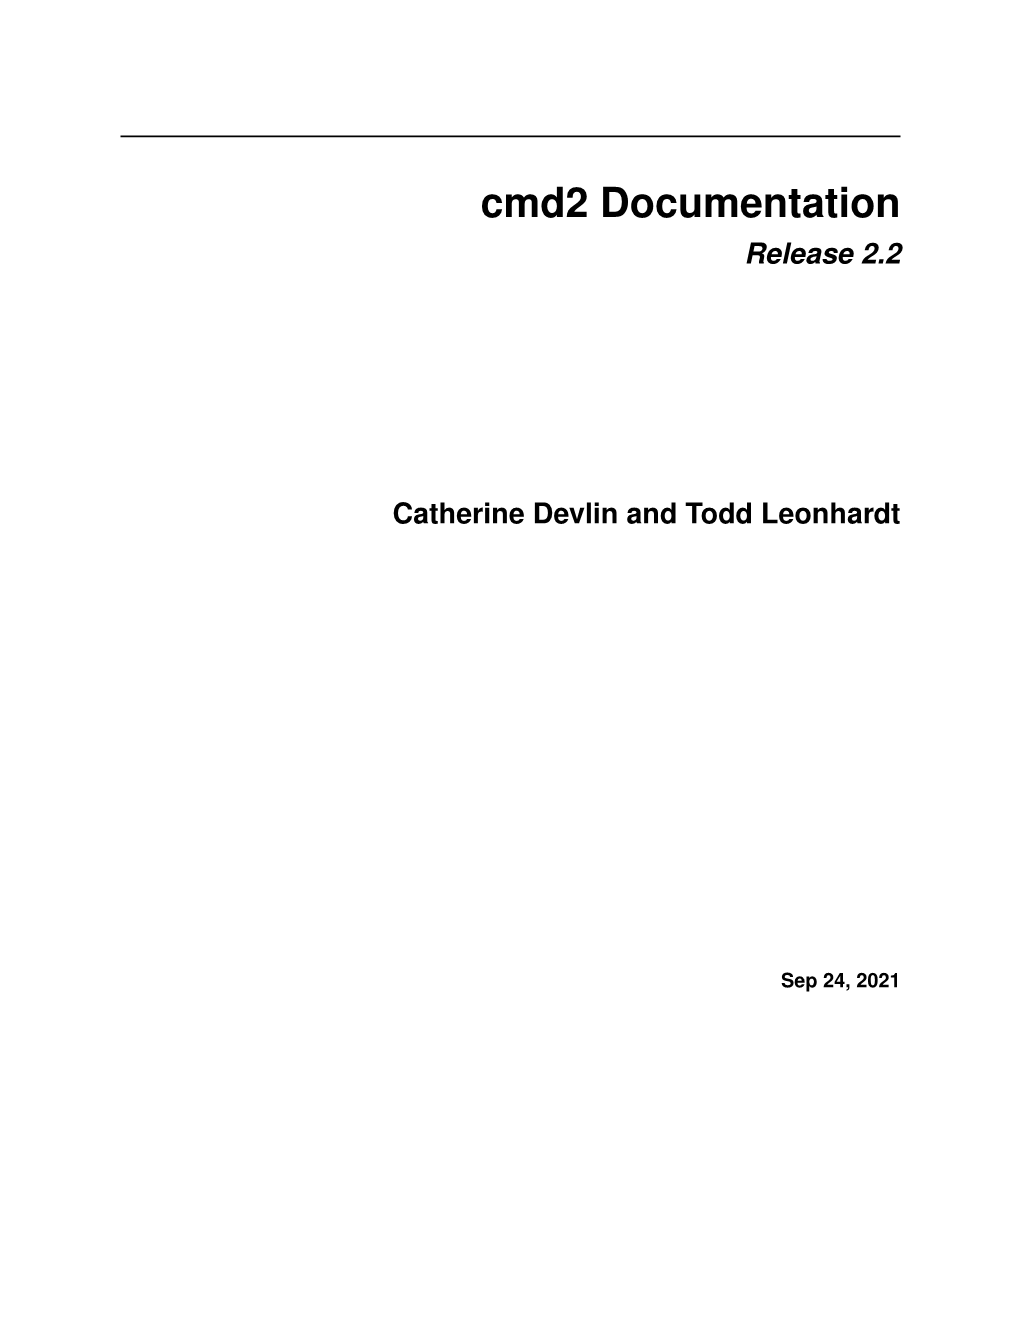 Cmd2 Documentation Release 2.2